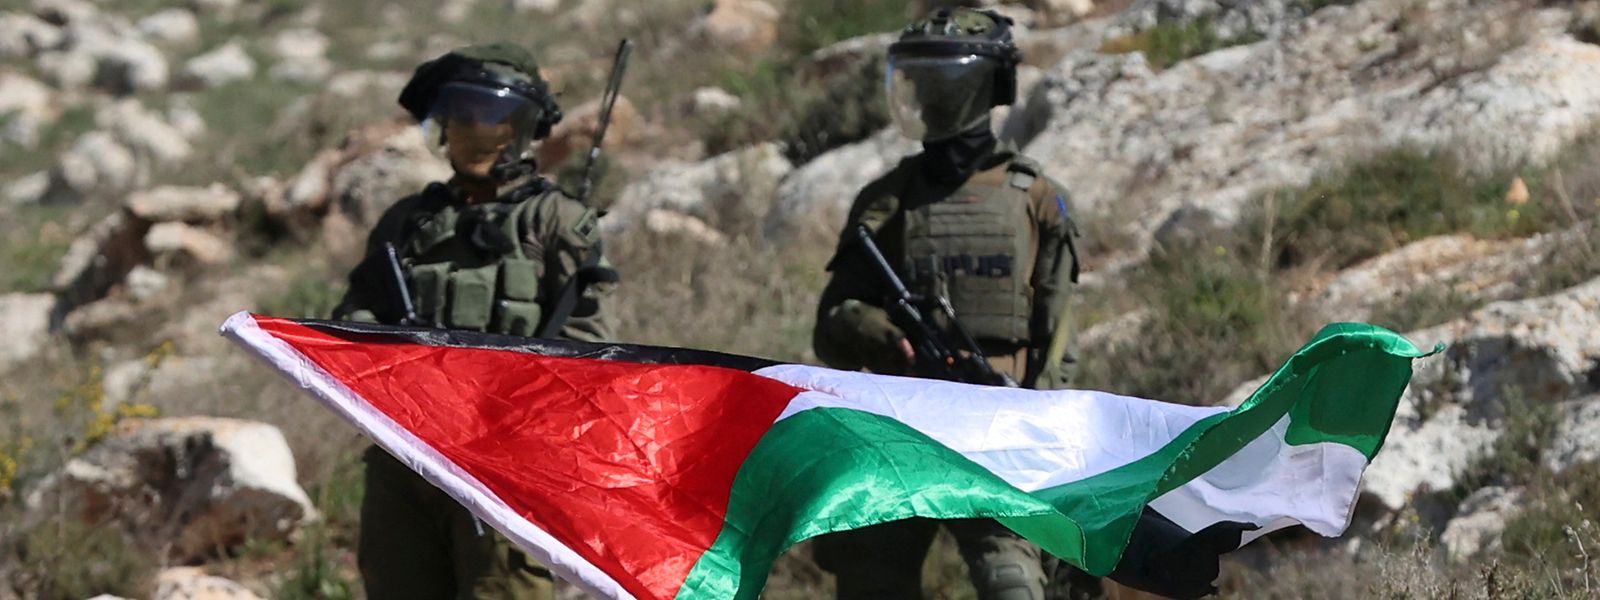 Ein palestinensischer Demonstrant schwingt unter Beobachtung zweier israelischer Soldaten die Nationalflagge. Damit protestiert er gegen die Errichtung von israelischen Außenposten nahe der West Bank-Stadt Nablus.